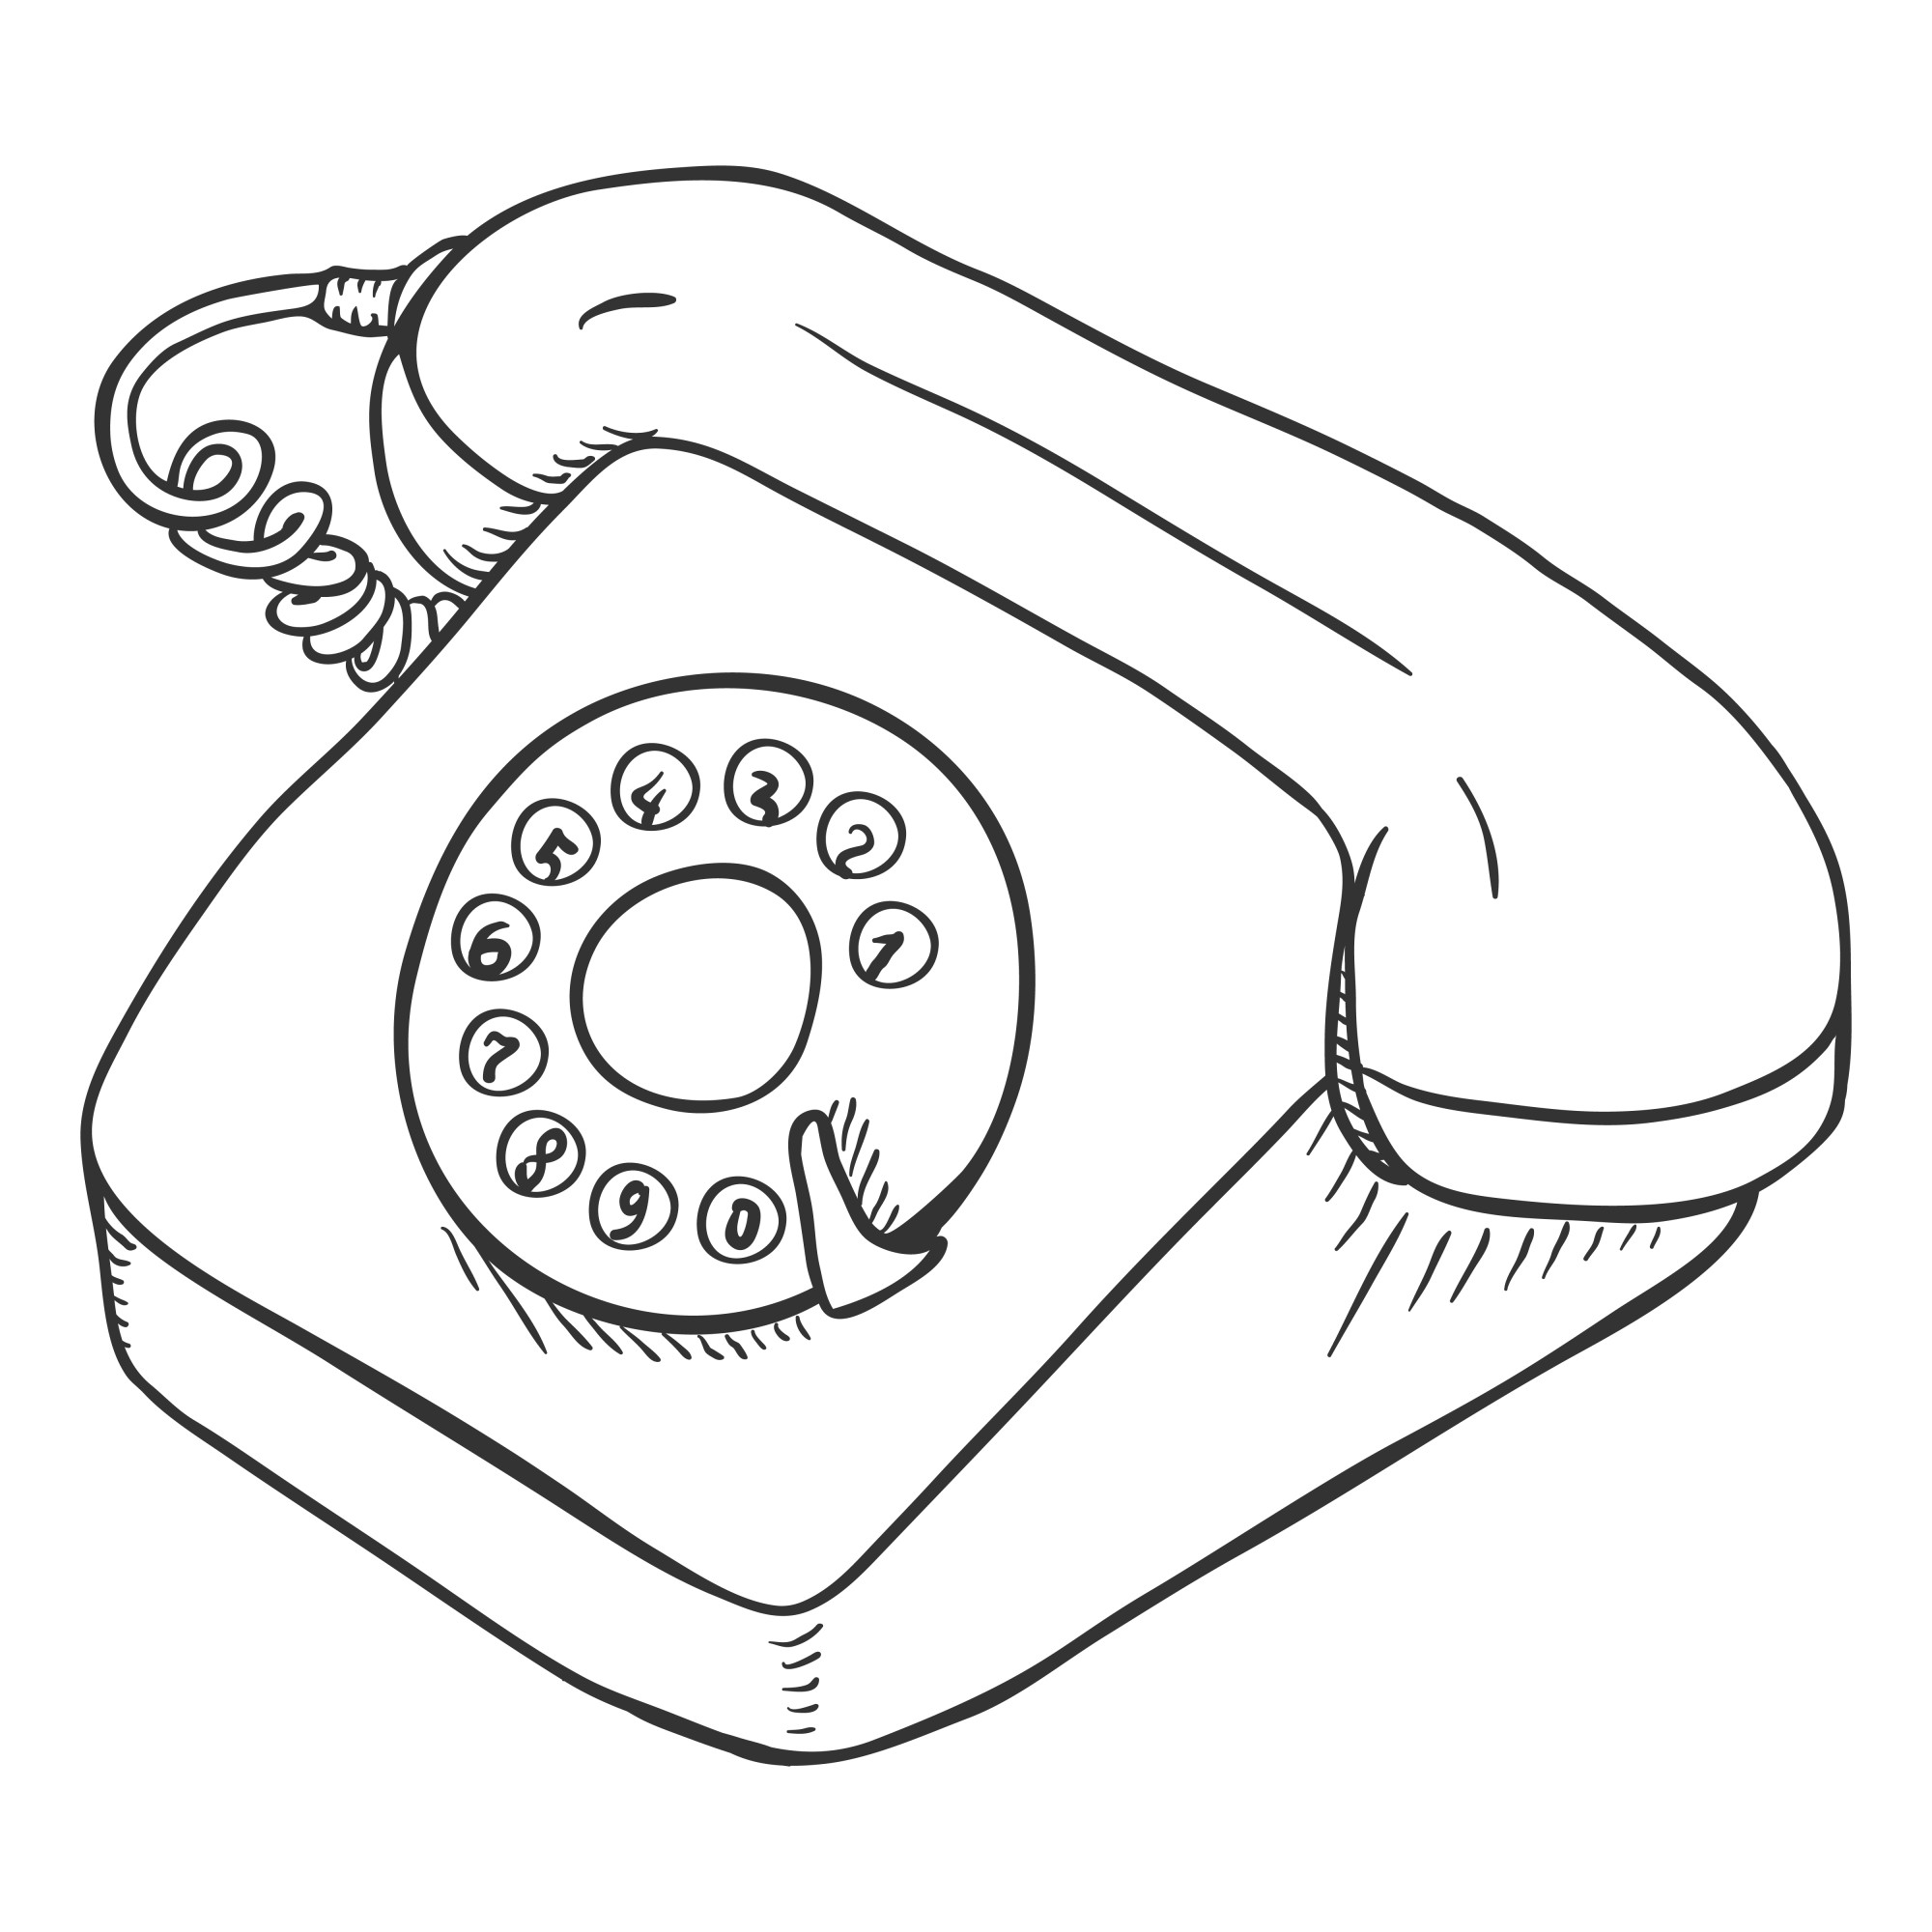 Раскраска для детей: игрушка телефон с трубкой